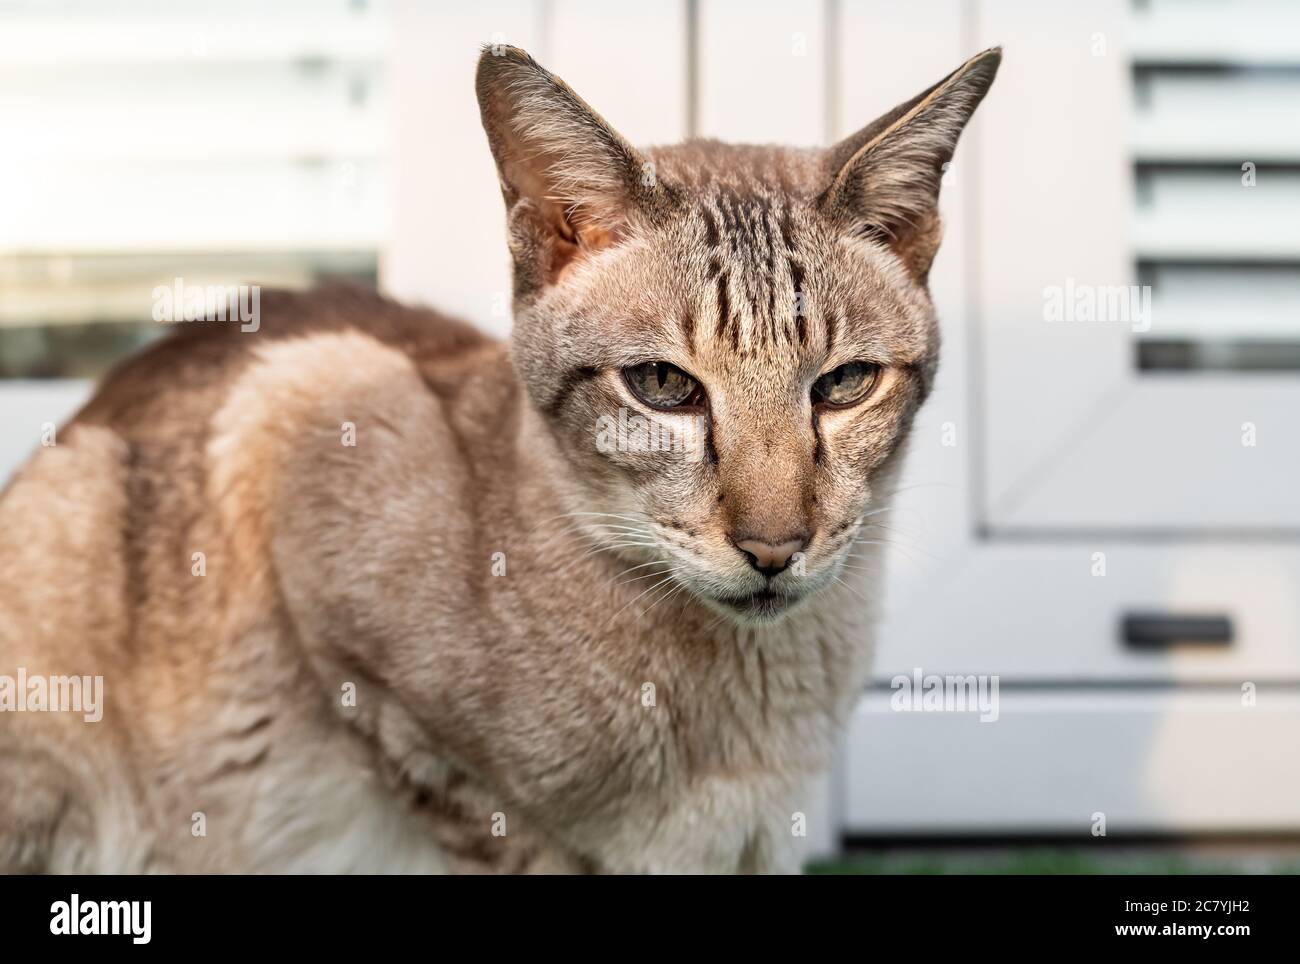 Ritratto di gatto orientale con orecchie grandi, occhi chiari e naso lungo. Foto Stock